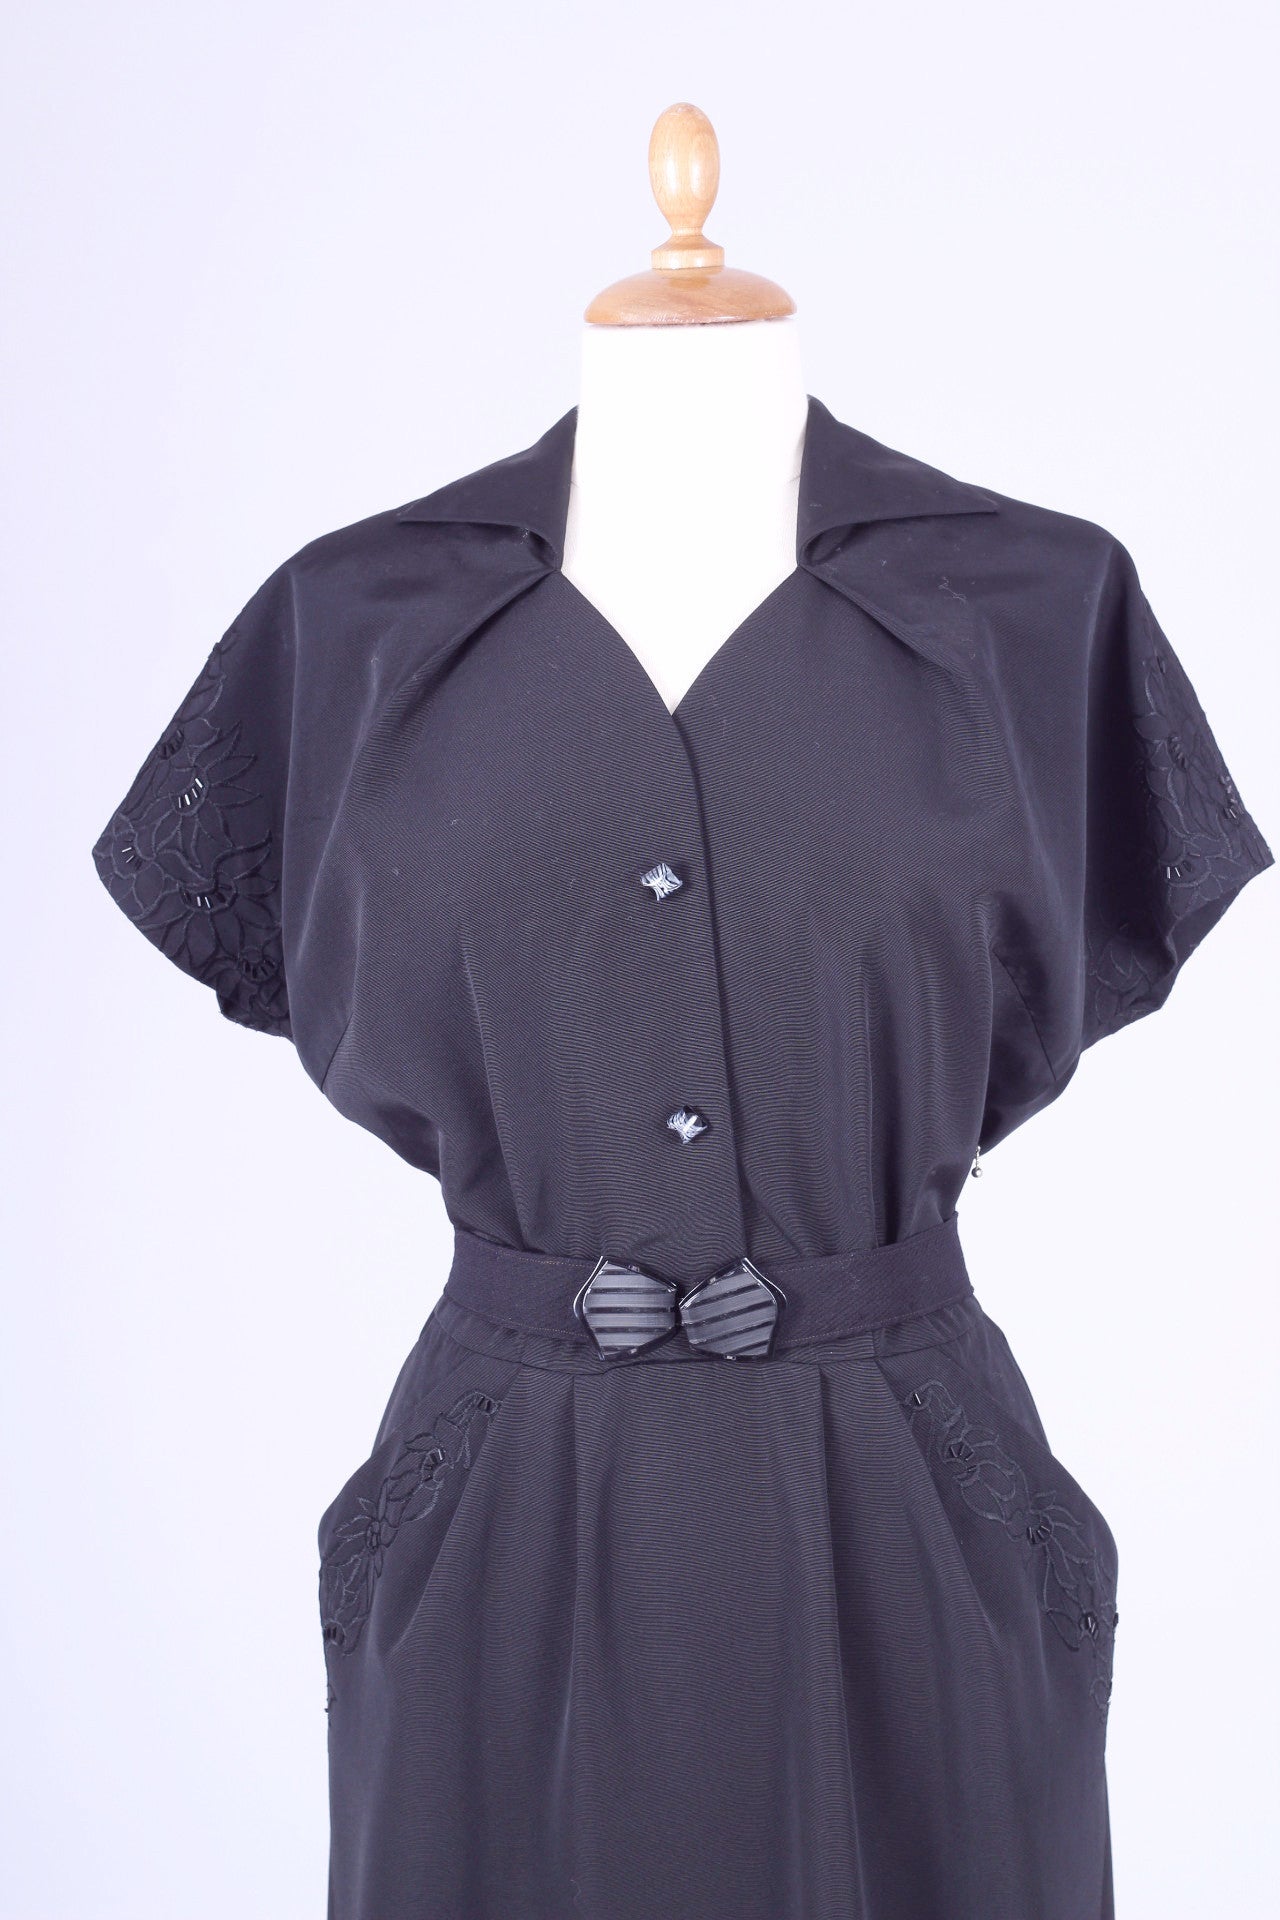 Sort kjole med perlebroderi 1950. L